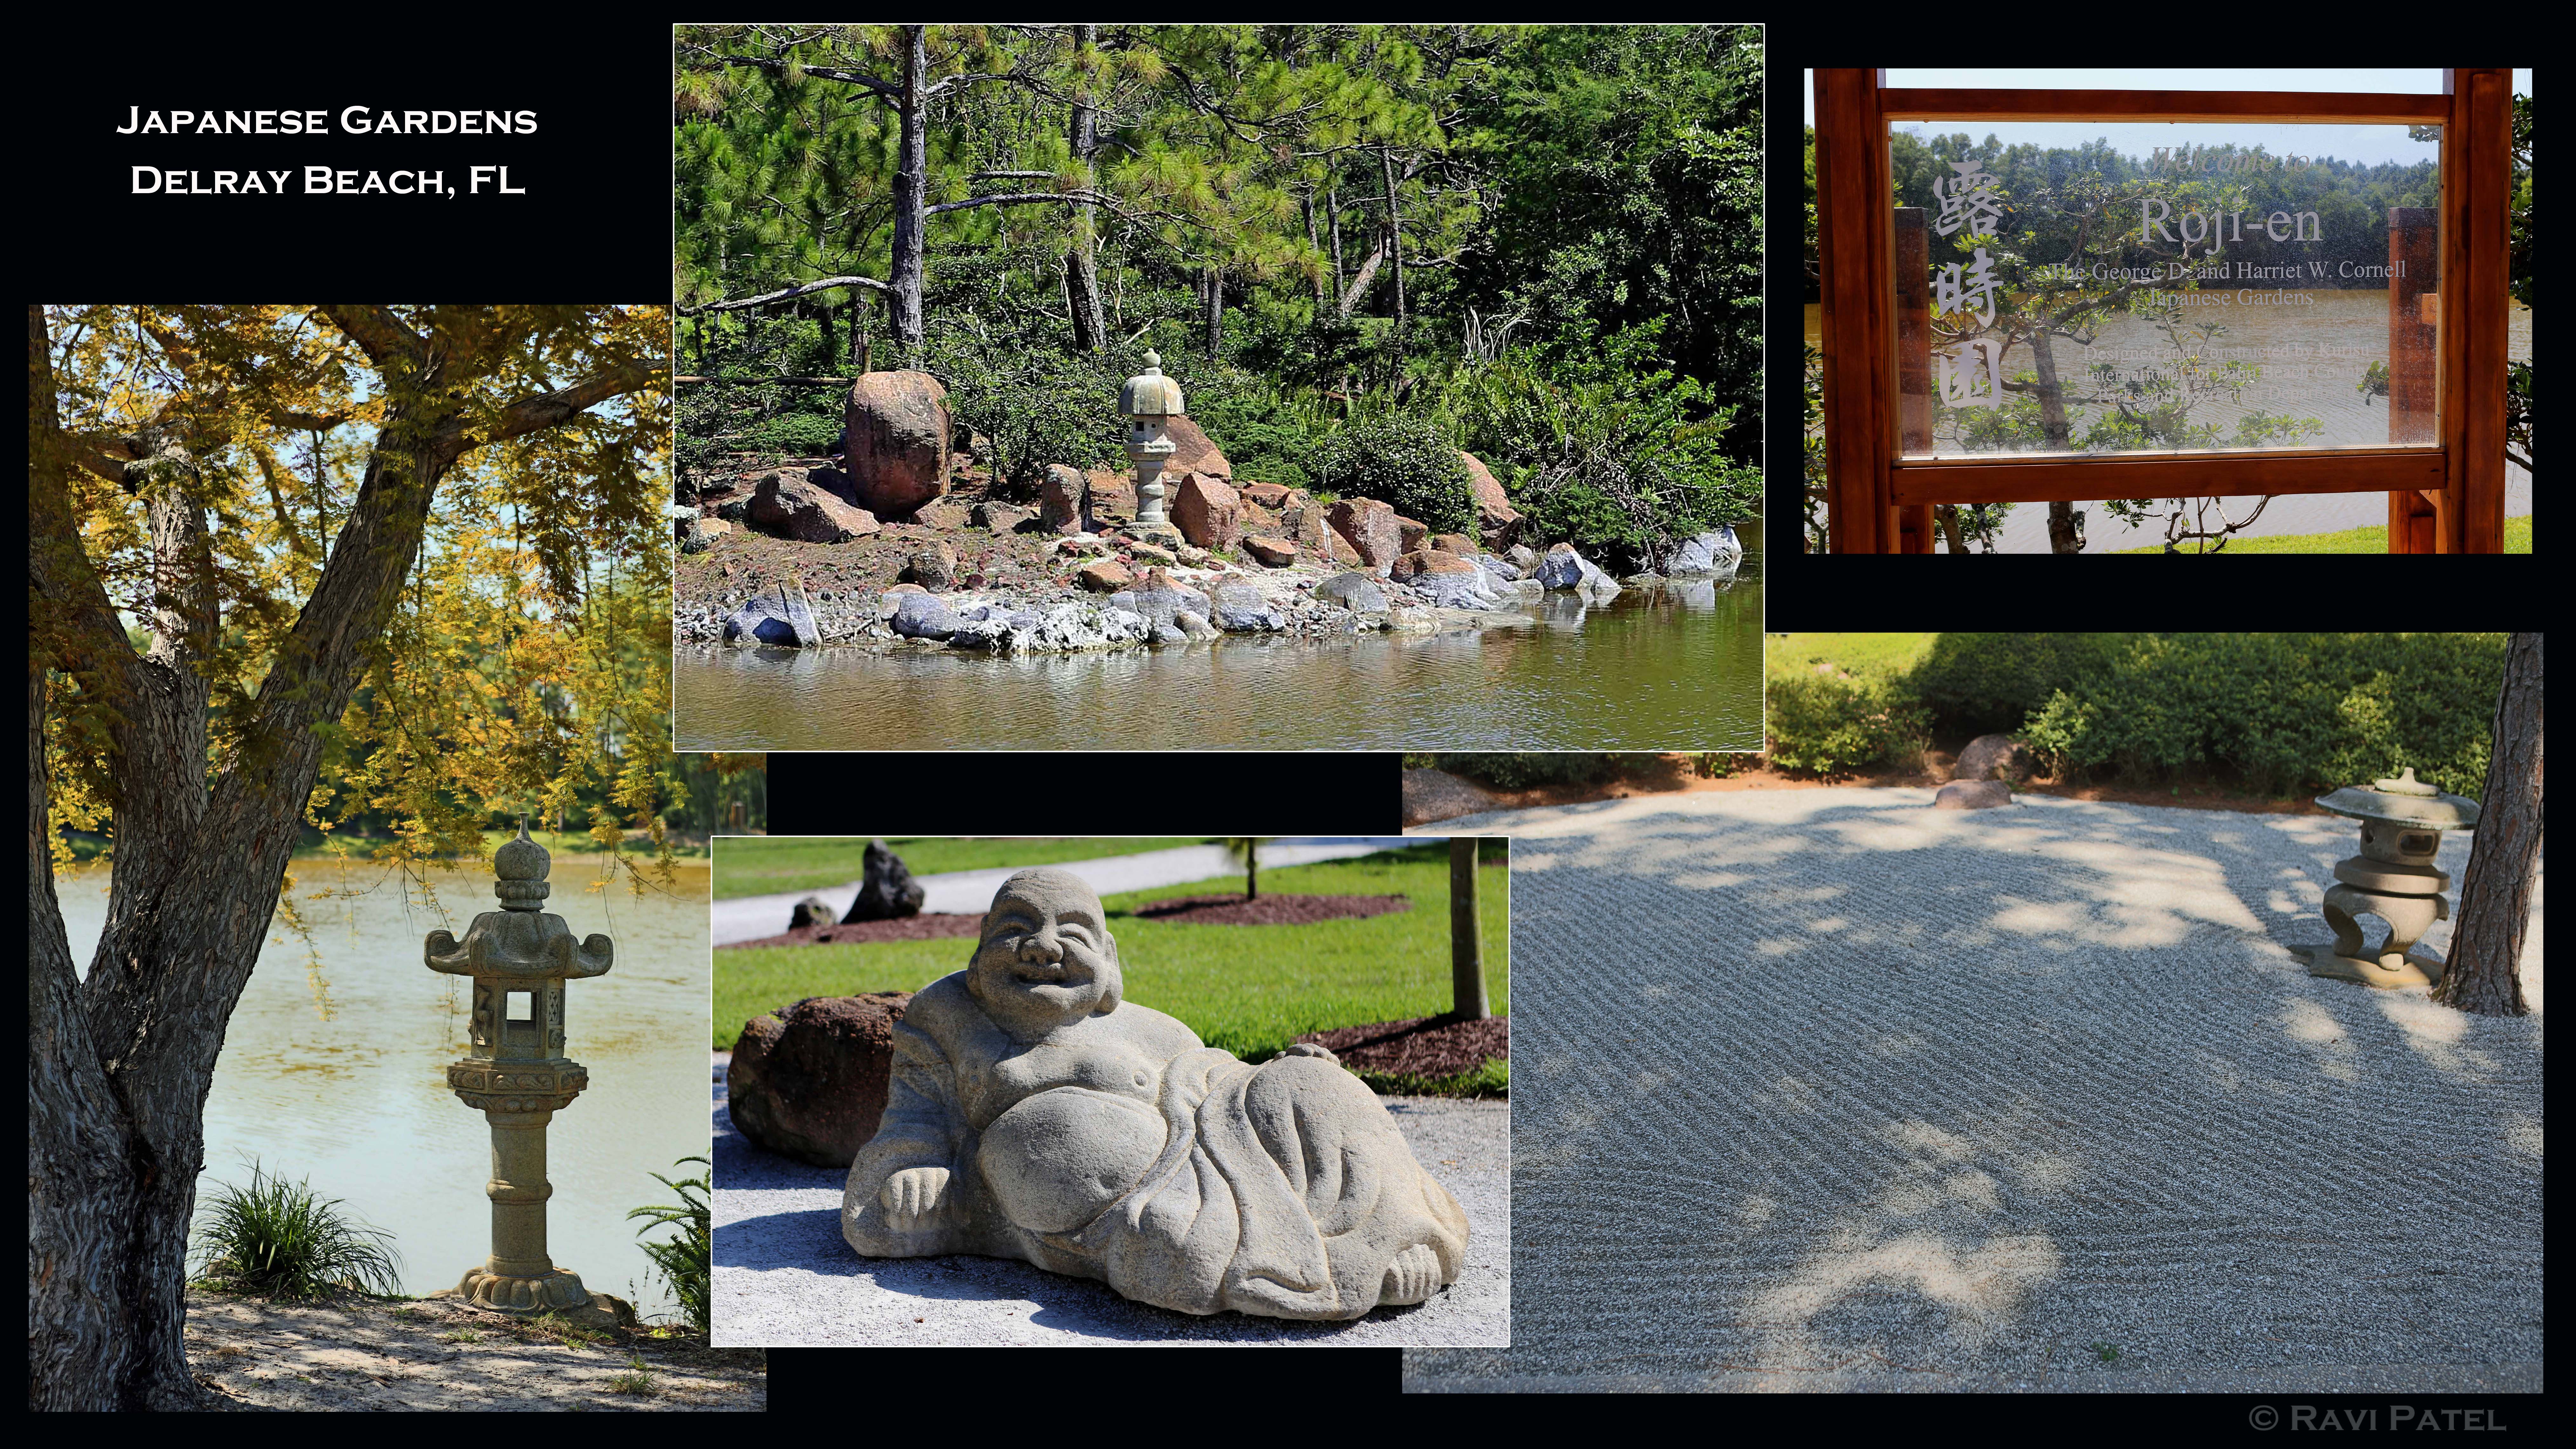 Florida Delray Beach Japanese Gardens Photos By Ravi